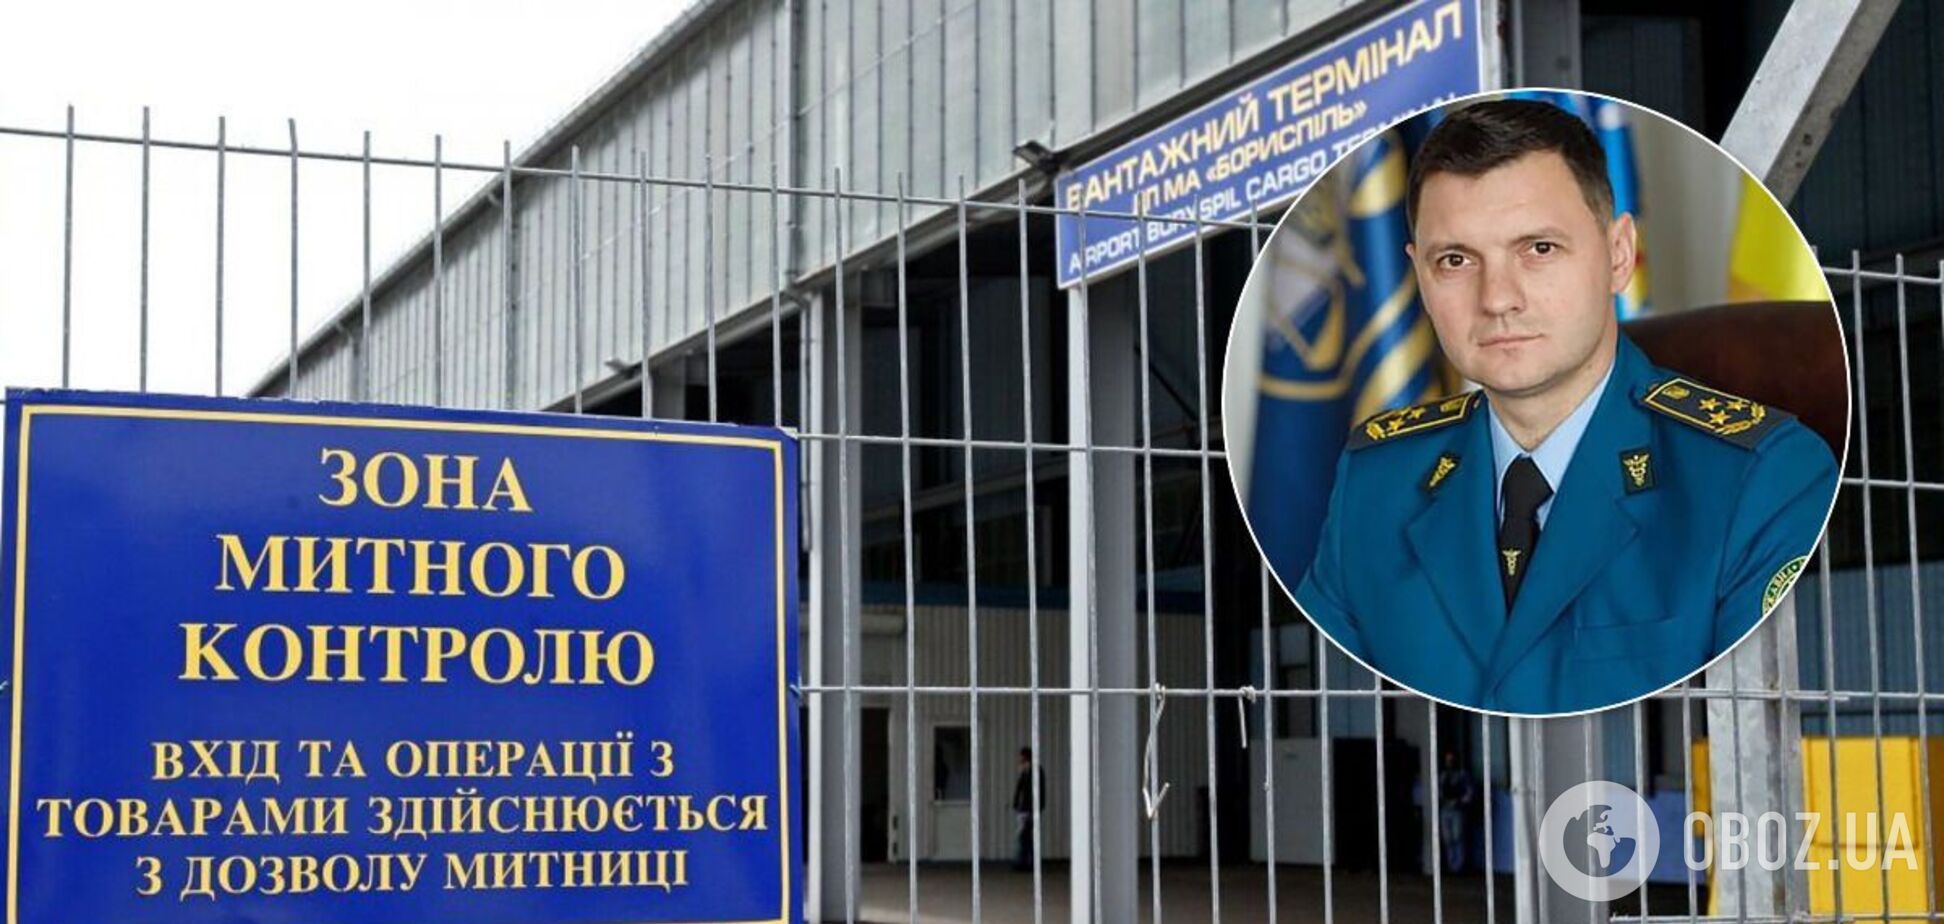 Одиозный Сличко возглавил Киевскую таможню: в каких скандалах замешан и чей протеже